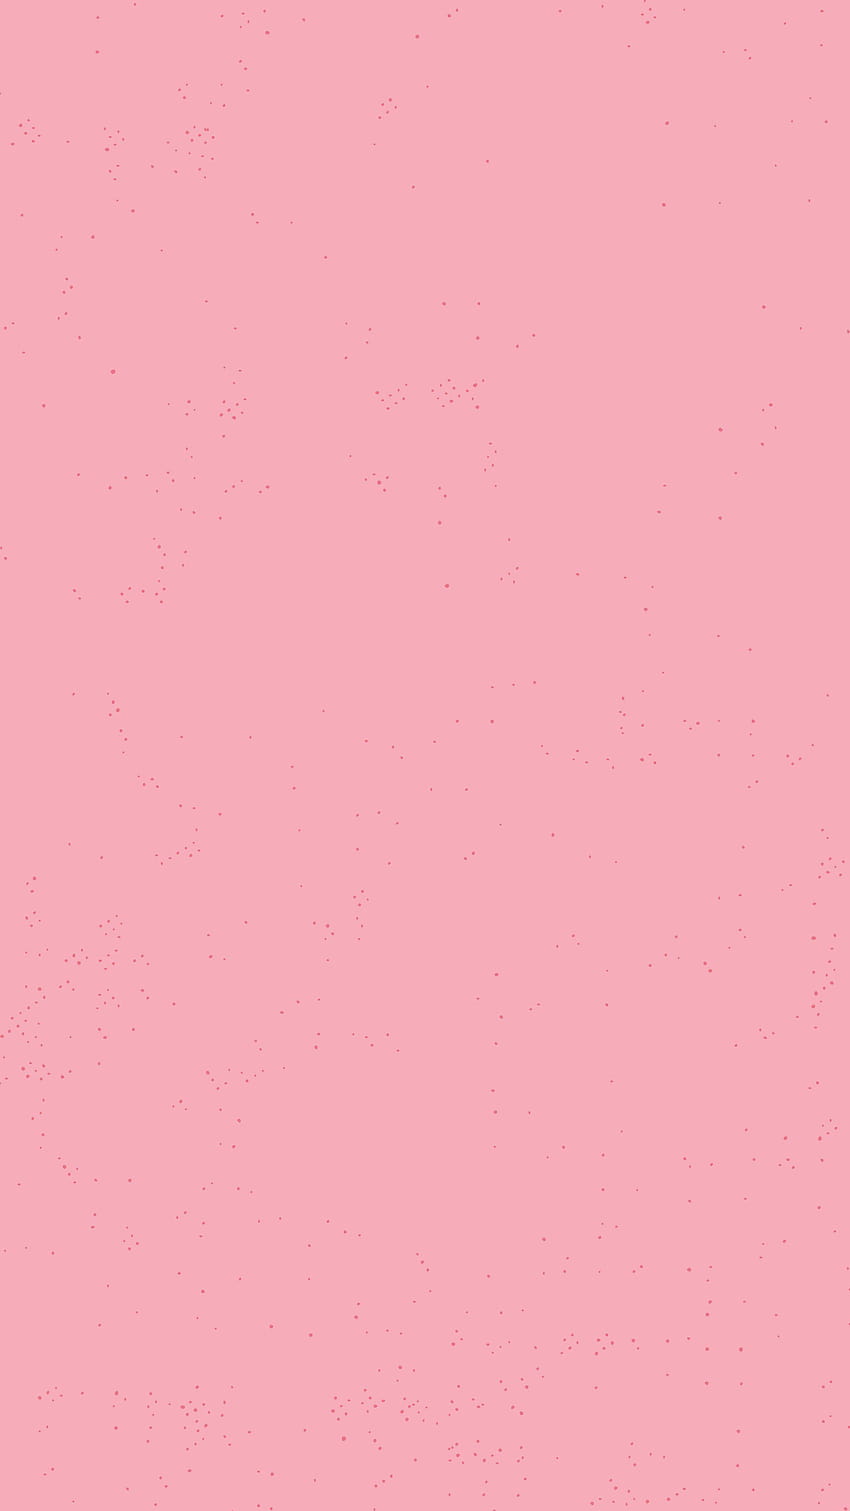 Hình nền điện thoại tumblr hồng nhạt với sắc hồng nhạt thanh thoát, tinh tế và mang một nét đẹp dịu dàng sẽ khiến bạn say mê. Hãy cài đặt ngay hình nền này cho điện thoại của bạn để tận hưởng vẻ đẹp của màu hồng.